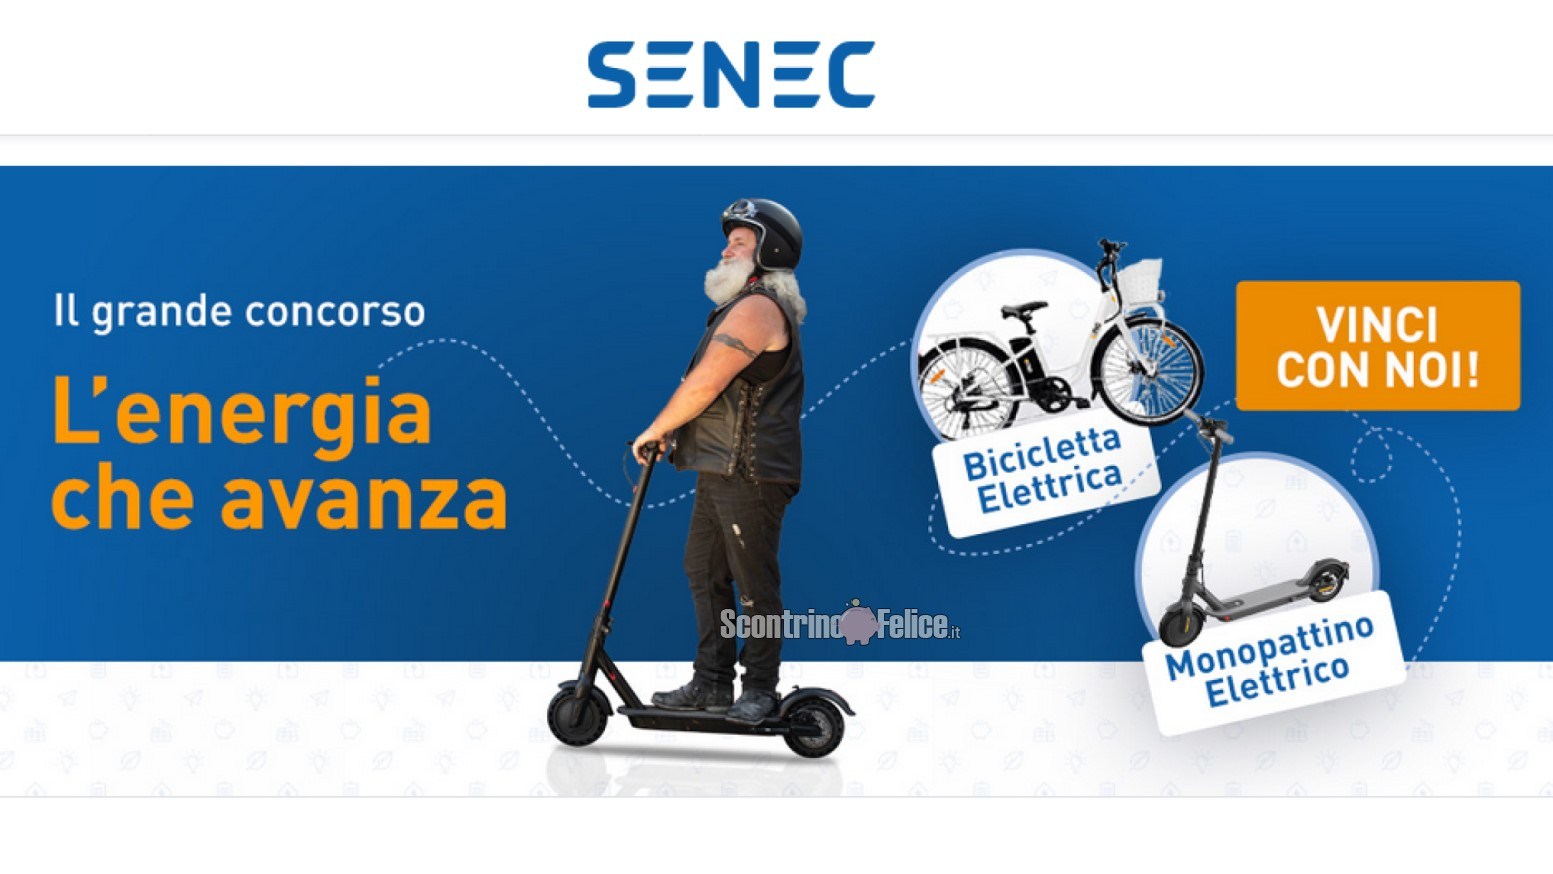 Concorso gratuito giornaliero SENEC "L'energia che avanza": vinci bici elettrica ICON.E, monopattino Xiaomi e gadget tecnologici